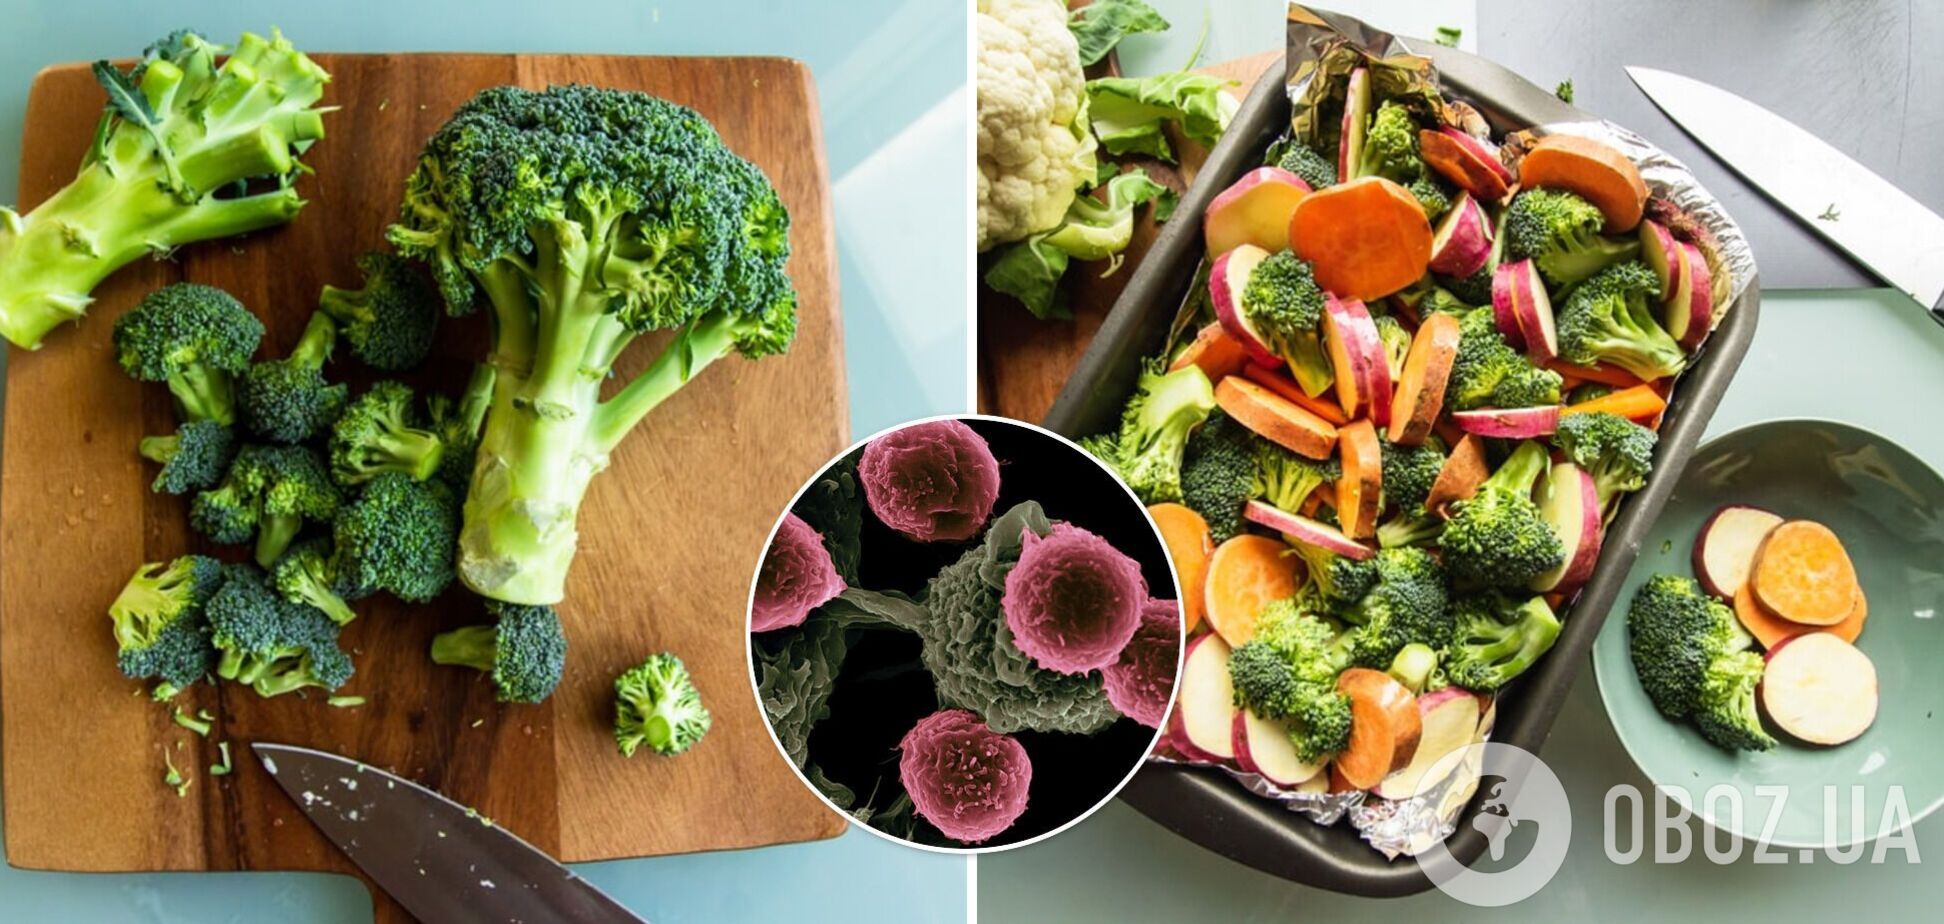 Вчені розповіли, вживання яких овочів може знизити ризик розвитку раку